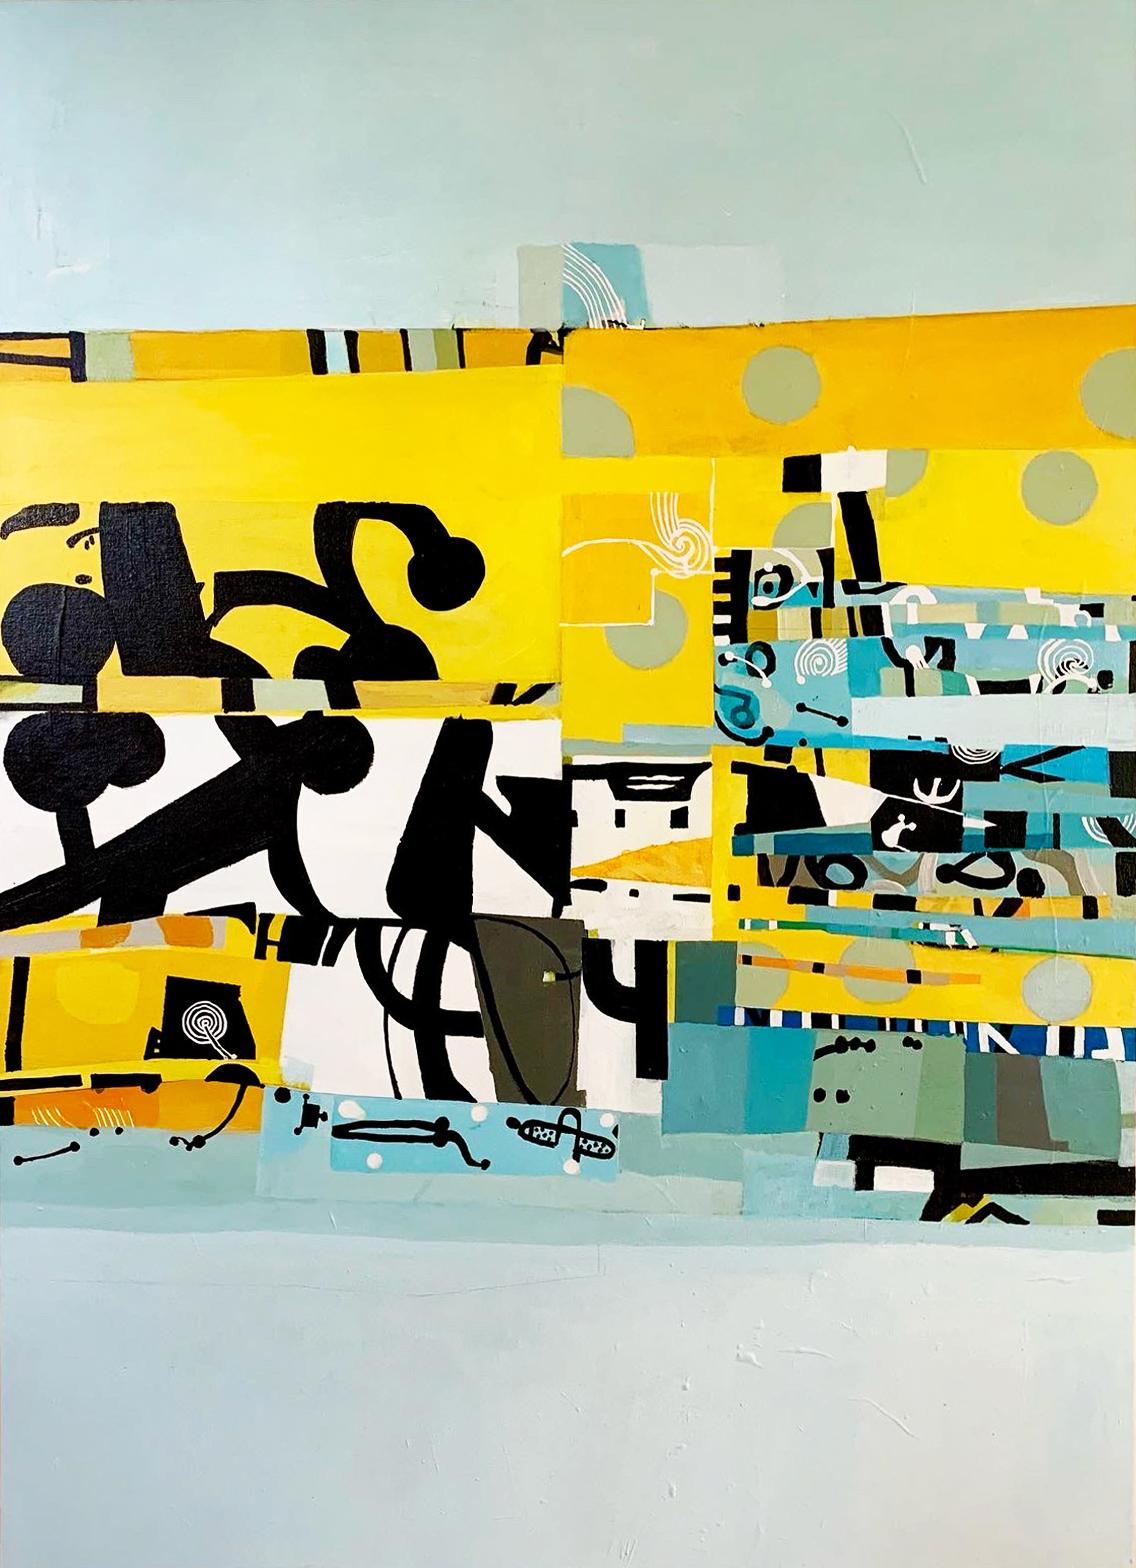 Russell Frampton Abstract Painting – 65 thru 69 Part 2 – zeitgenössisches abstraktes Gemälde in Mischtechnik mit buntem Gemälde